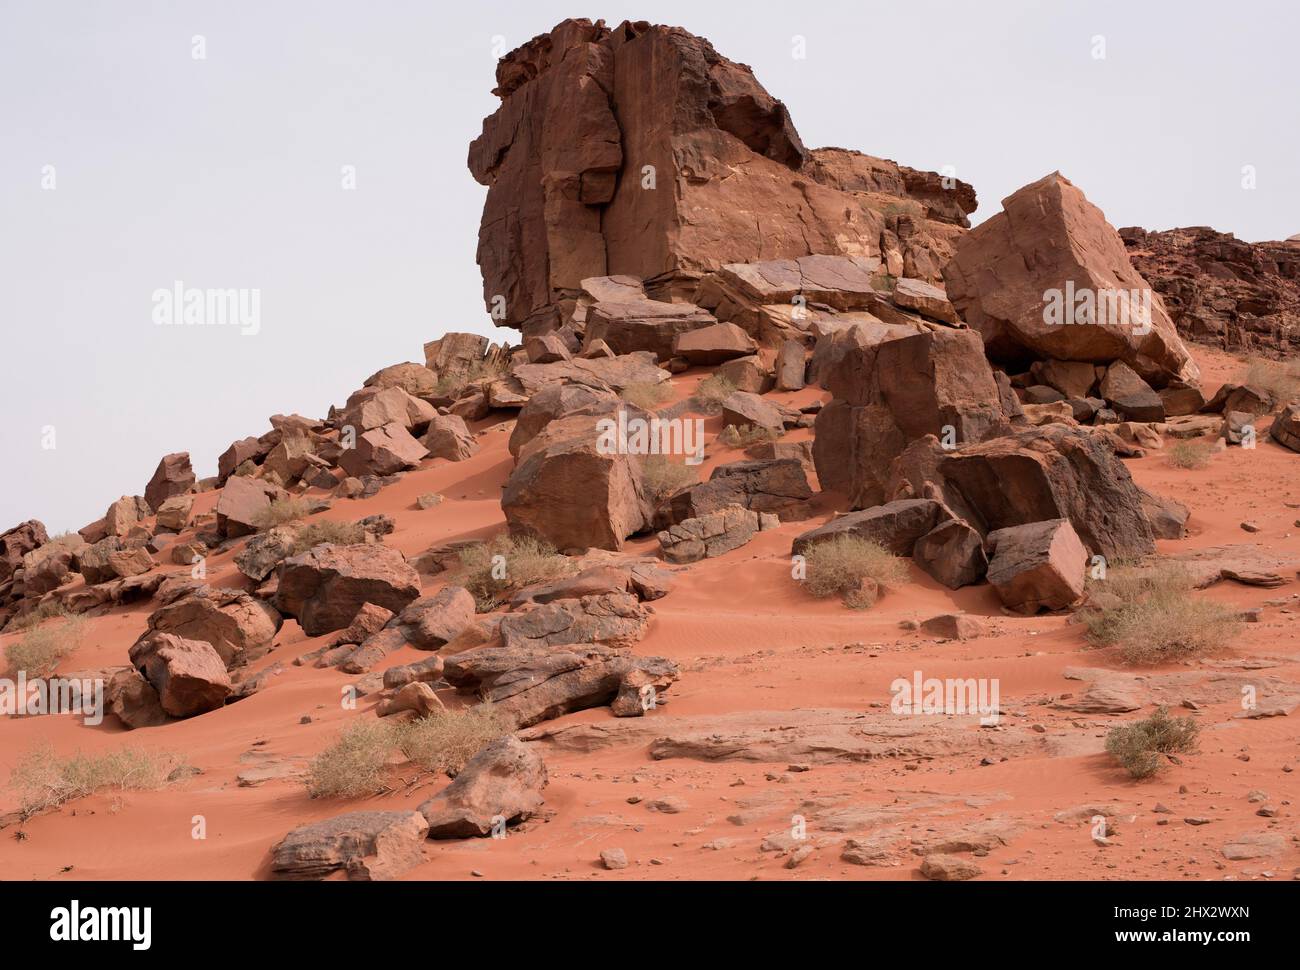 Rotura de roca para el estrés térmico, una especie de meteorización geológica. Wadi Rum, Jordania. Foto de stock